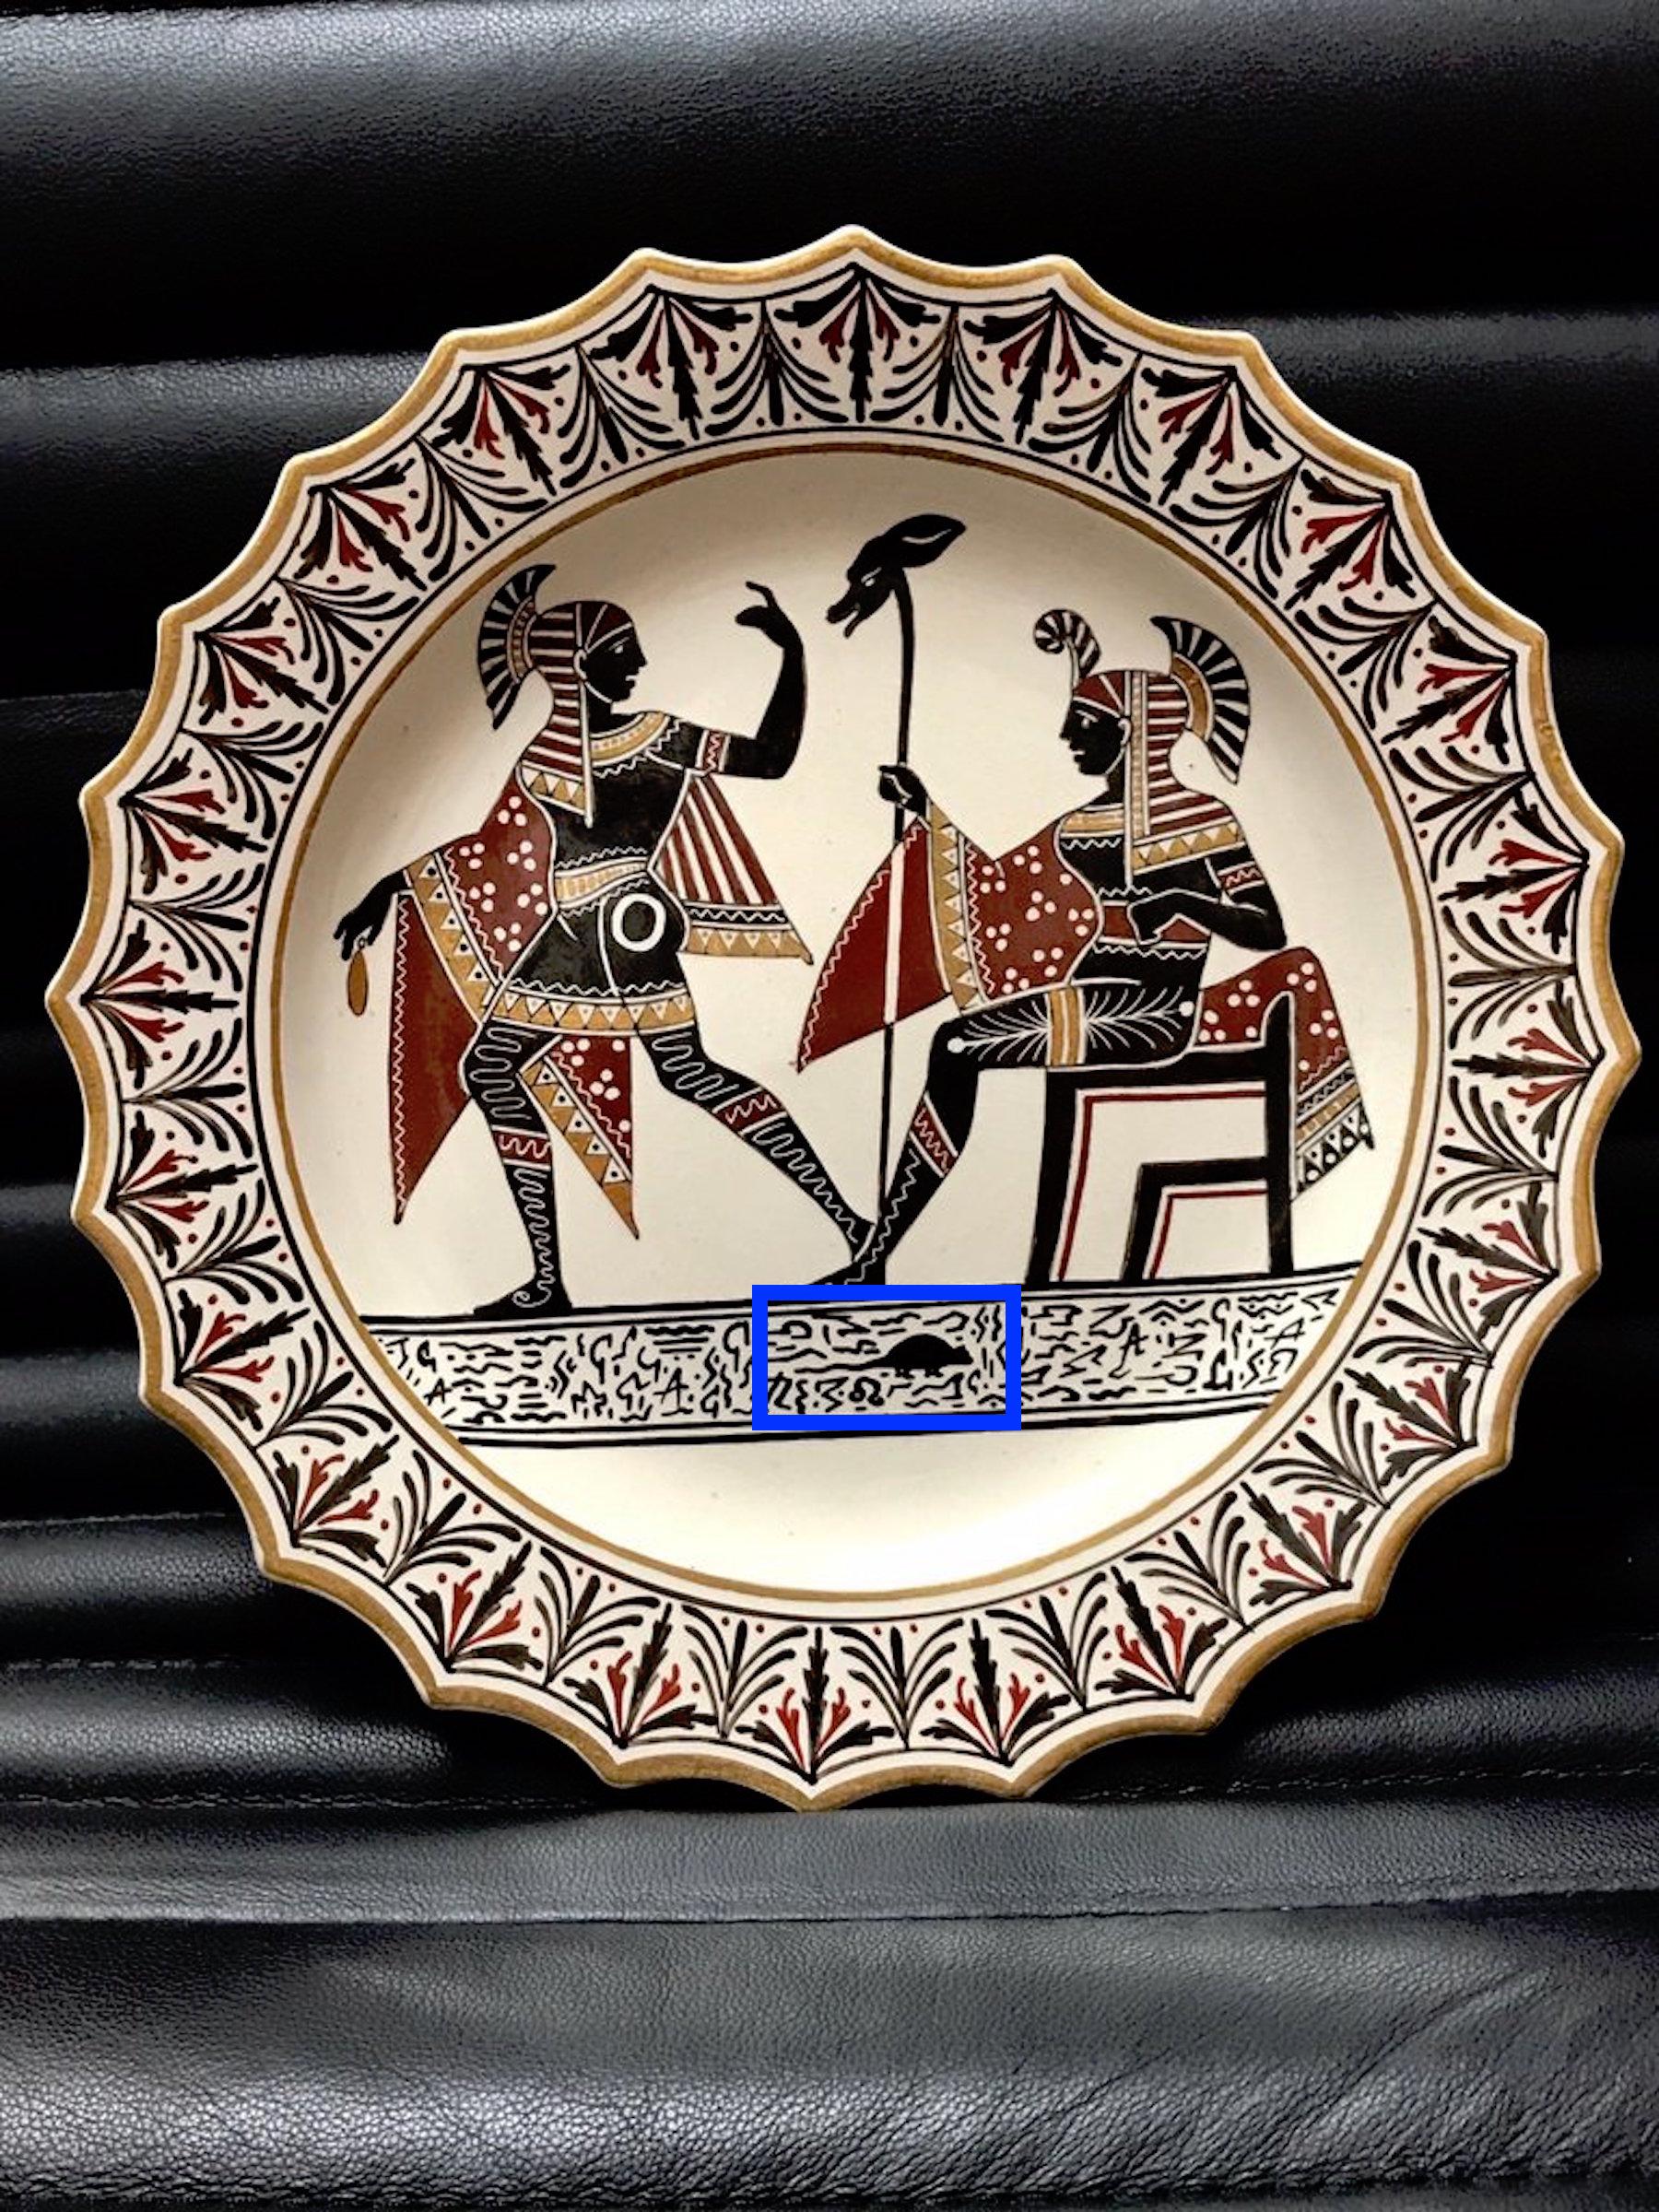 Giustiniani Egyptomania Keramikteller mit vergoldeten Akzenten und einem zentralen Nagetier
Neapolitanische Herstellung (Biagio Giustiniani & Söhne), datiert auf 1830-1840
19. Jahrhundert, eingeprägte Schrift Giustiniani und andere Zeichen.
 